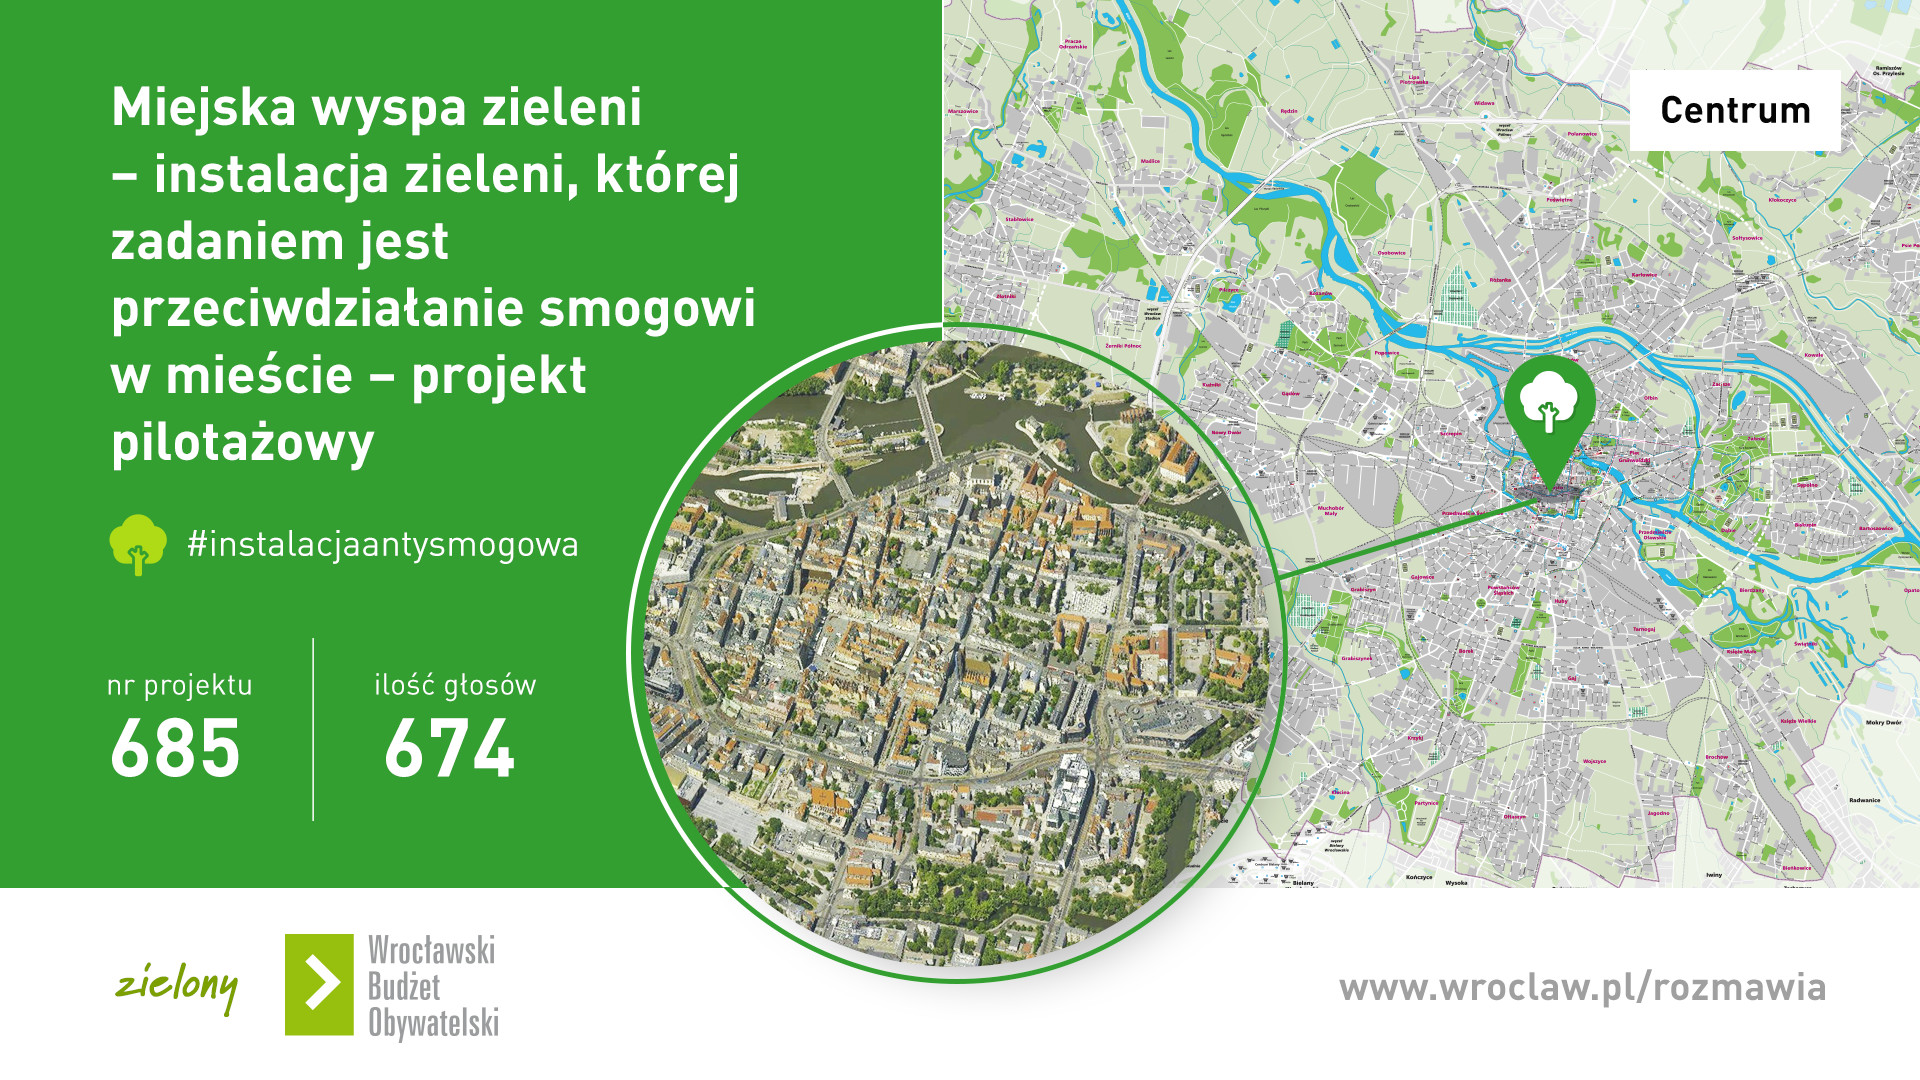 Miejska wyspa zieleni - infografika